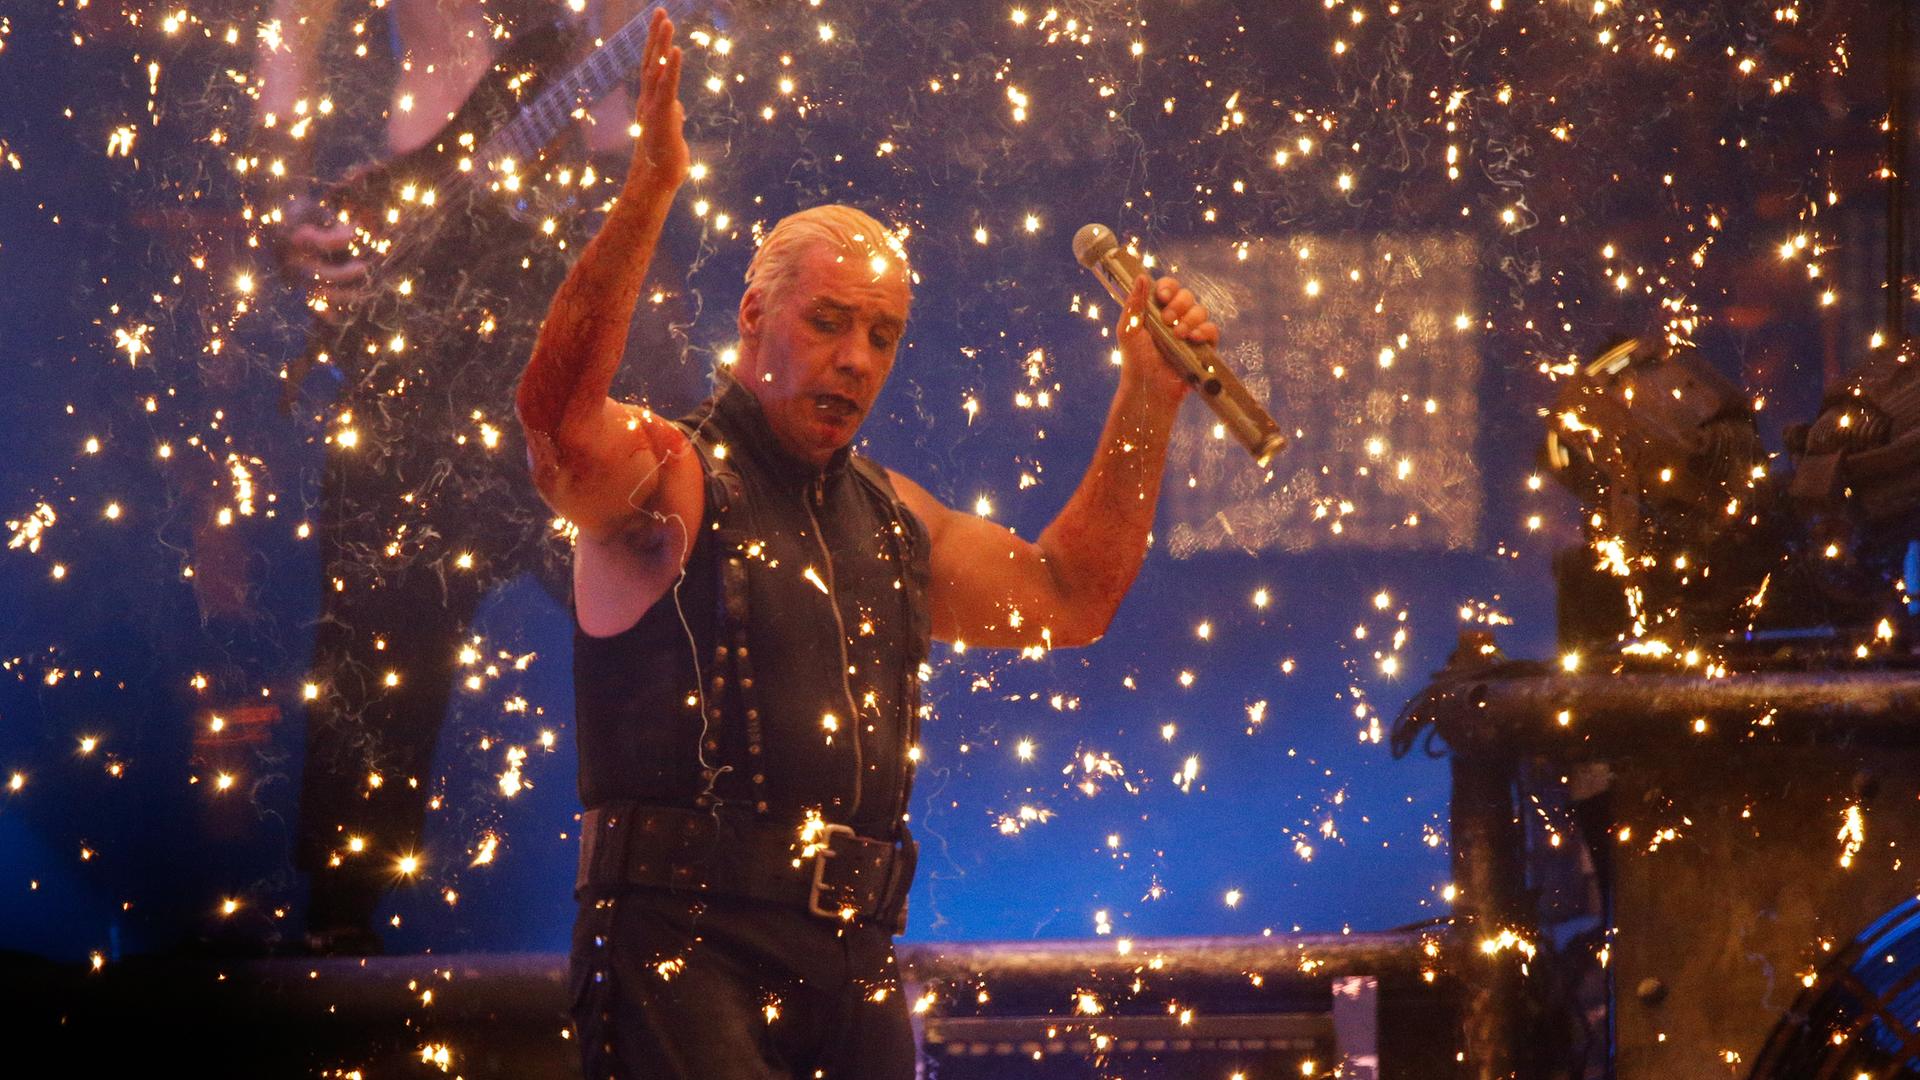 Till Lindemann steht mit erhobenen Händen auf einer Bühne, von goldenem Konfettiregen umgeben